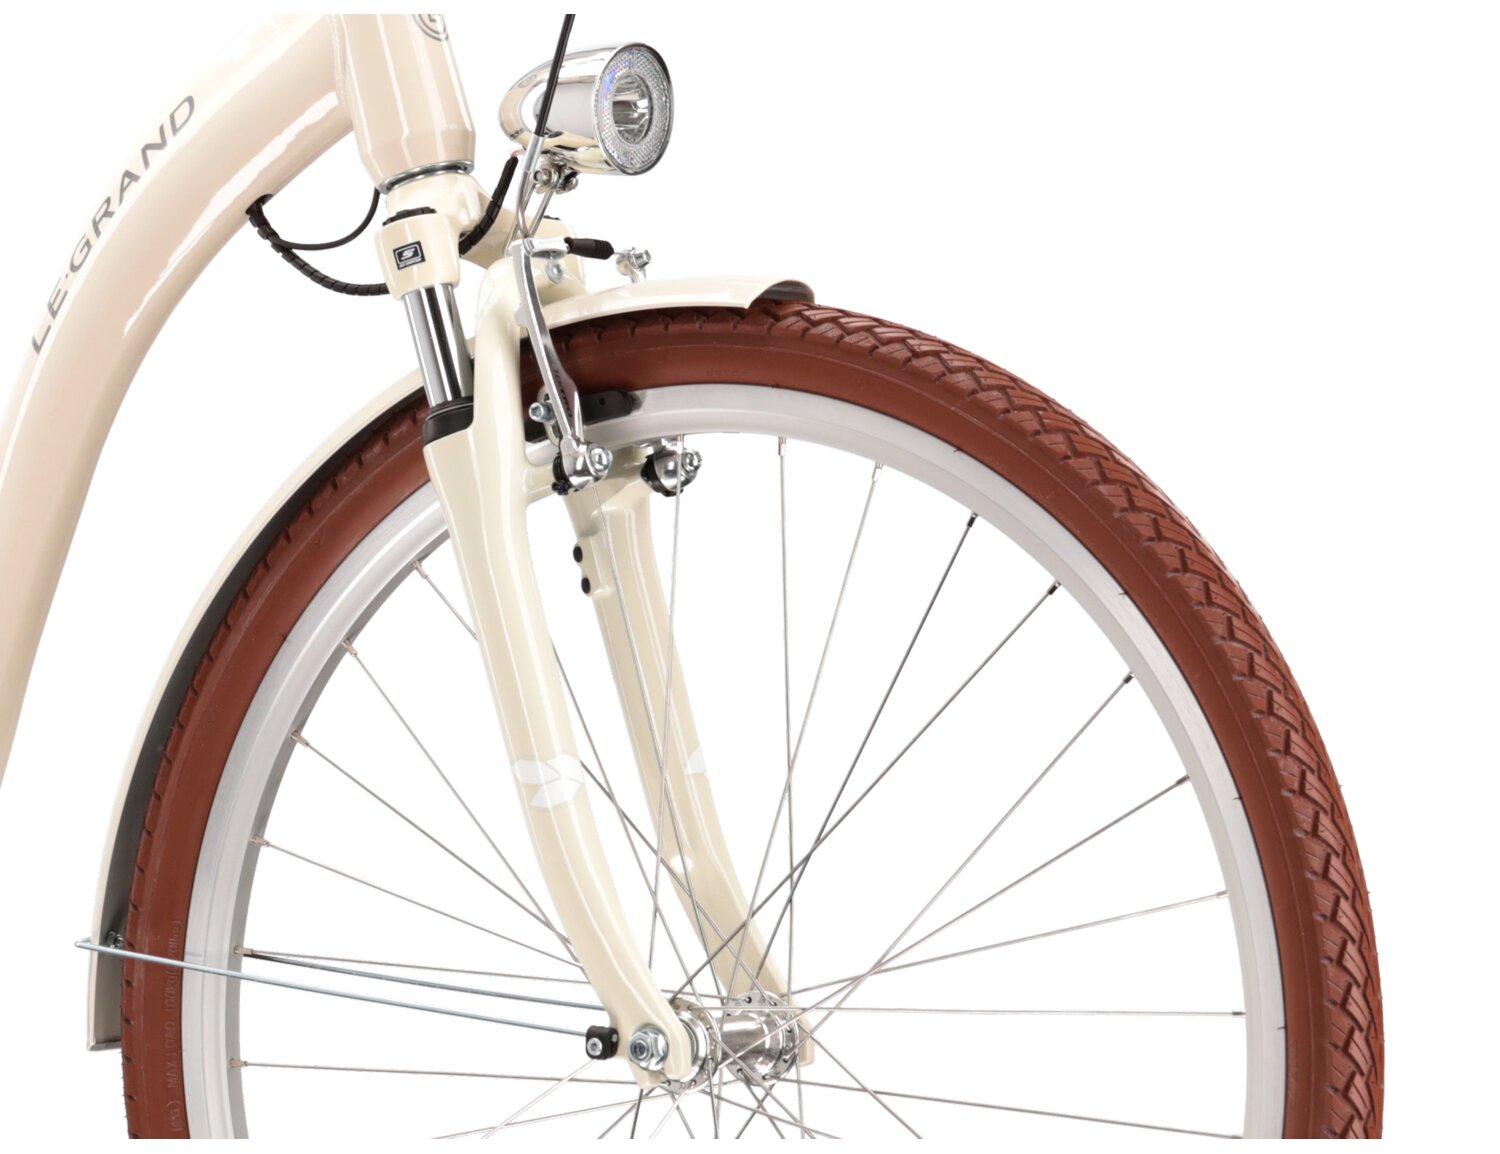 Aluminowa rama, amortyzowany widelec SR Suntour o skoku 40mm oraz opona w elektrycznym rowerze miejskim Ebike City Le Grand Elille 3 447 Wh 